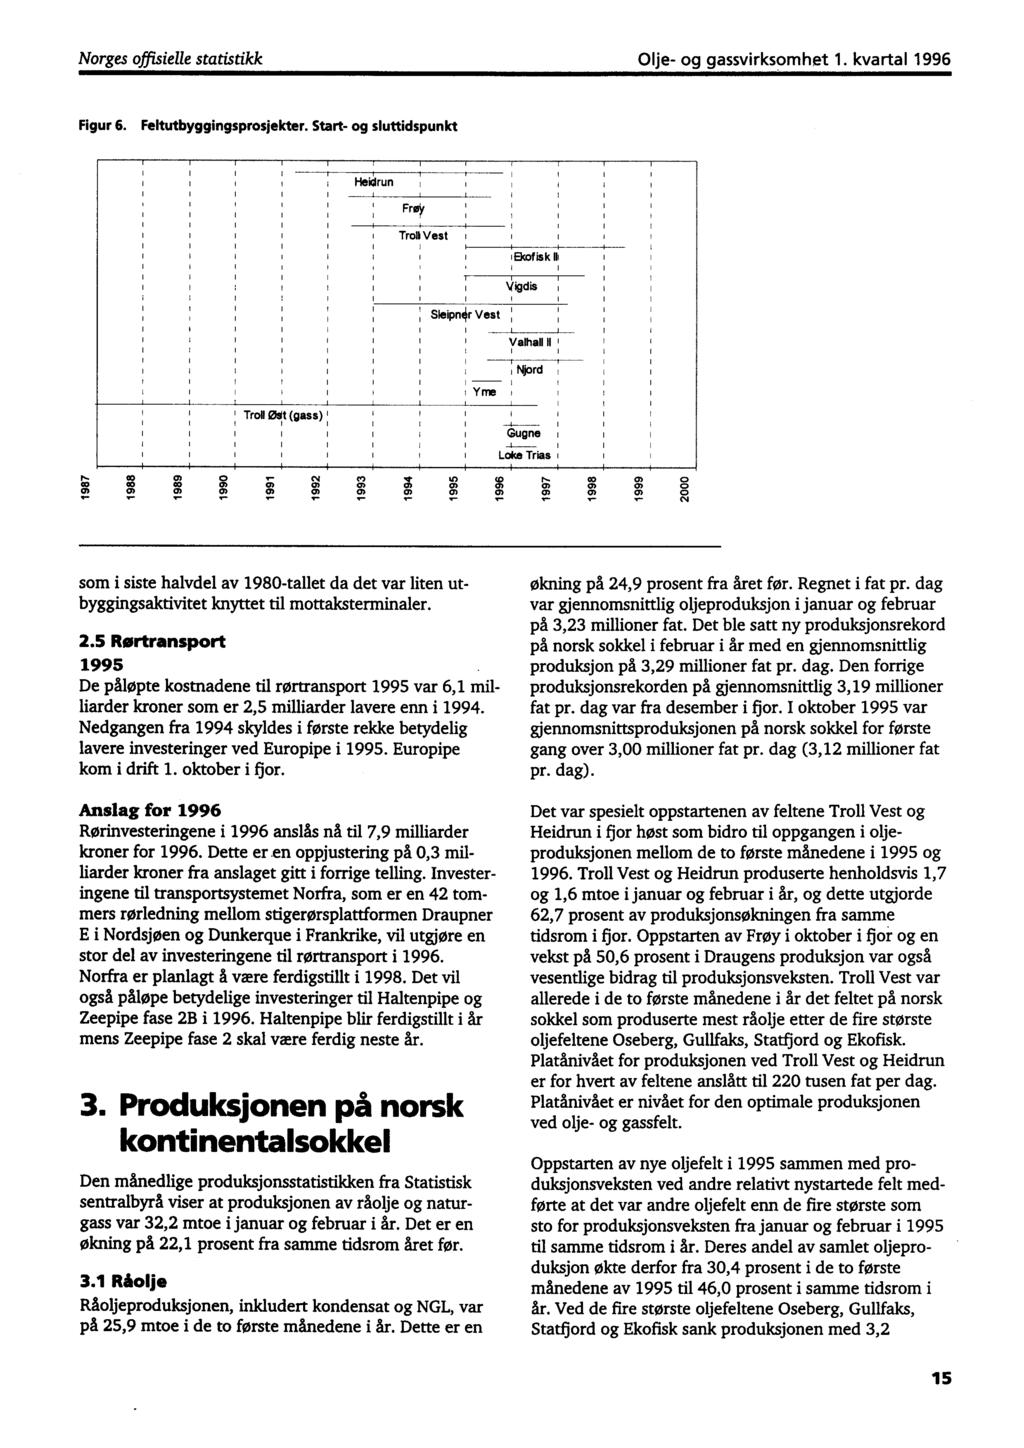 Norges offisielle statistikk Olje- og gassvirksomhet 1. kvartal 1996 Figur 6. Feltutbyggingsprosjekter. Start- og sluttidspunkt Heidrun Frø' TroI Vest Ekofisk Vigdis Sleipn r Vest Valhall I!